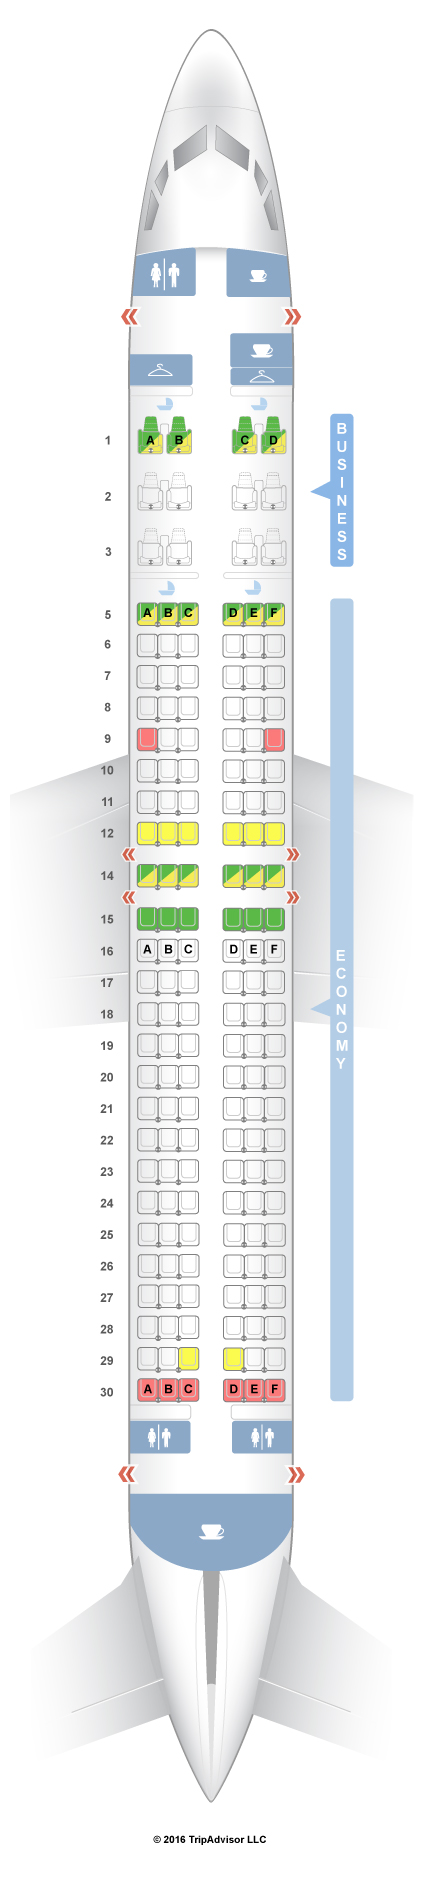 737 800 seat map Seatguru Seat Map Silkair Seatguru